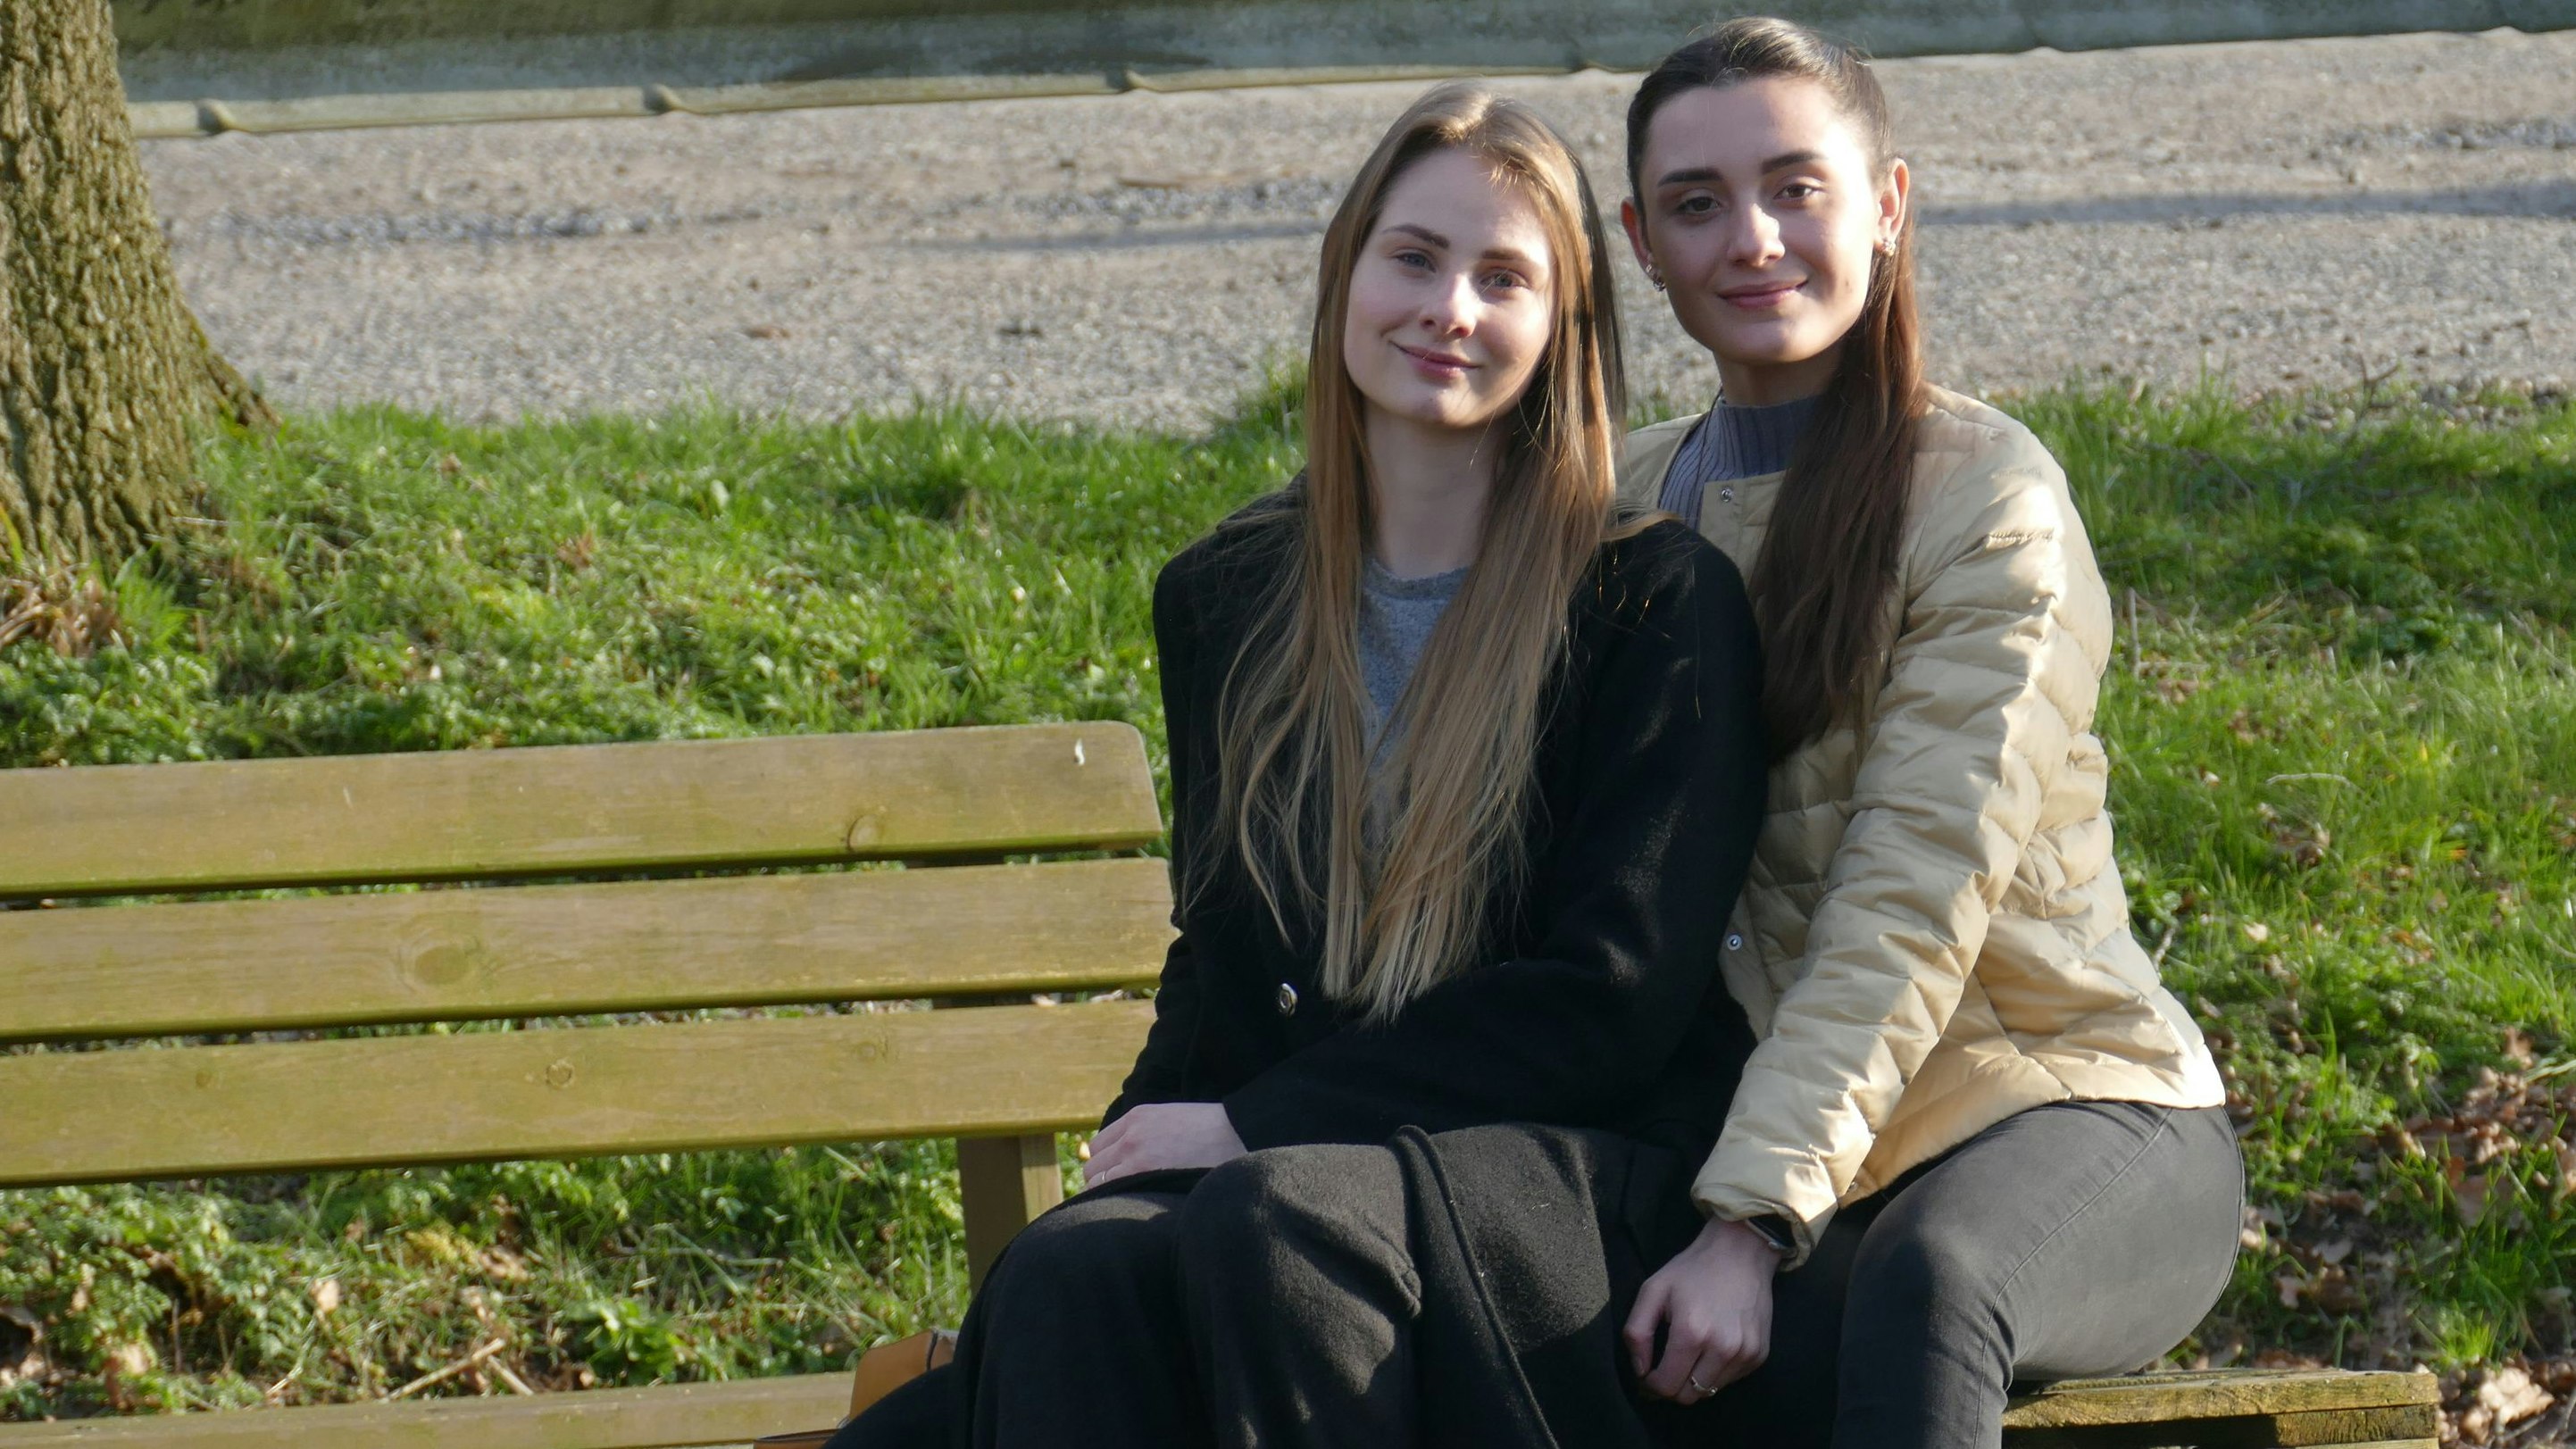 Kristina (rechts) zieht es zurück in die ukrainische Heimat. Ihre Freundin Anna will weiter in Deutschland bleiben. Foto: Stix